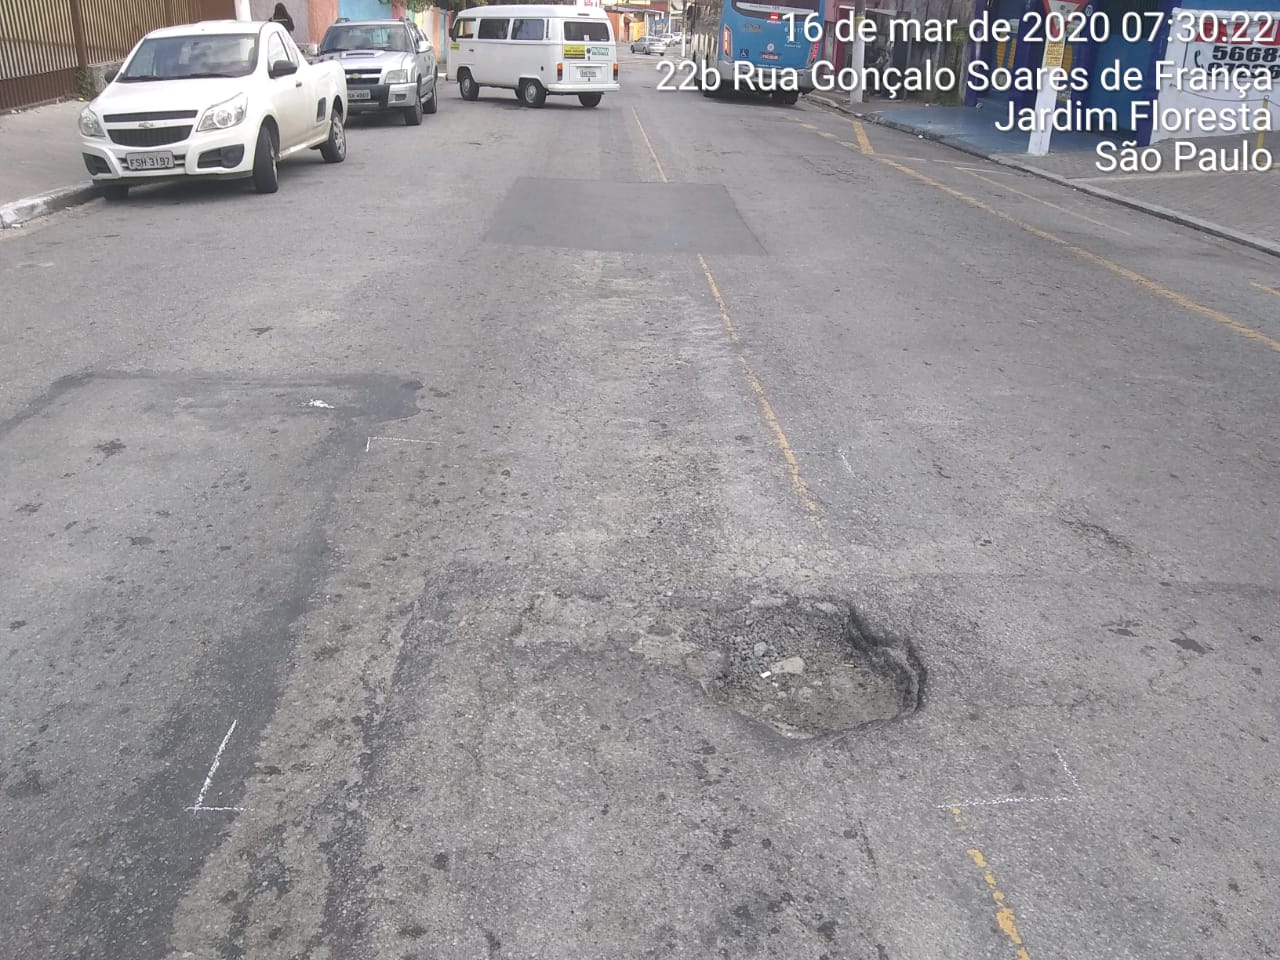 #PraCegoVer - Na primeira foto, o buraco, bem no centro da via. Na foto seguinte, o buraco já tapado.